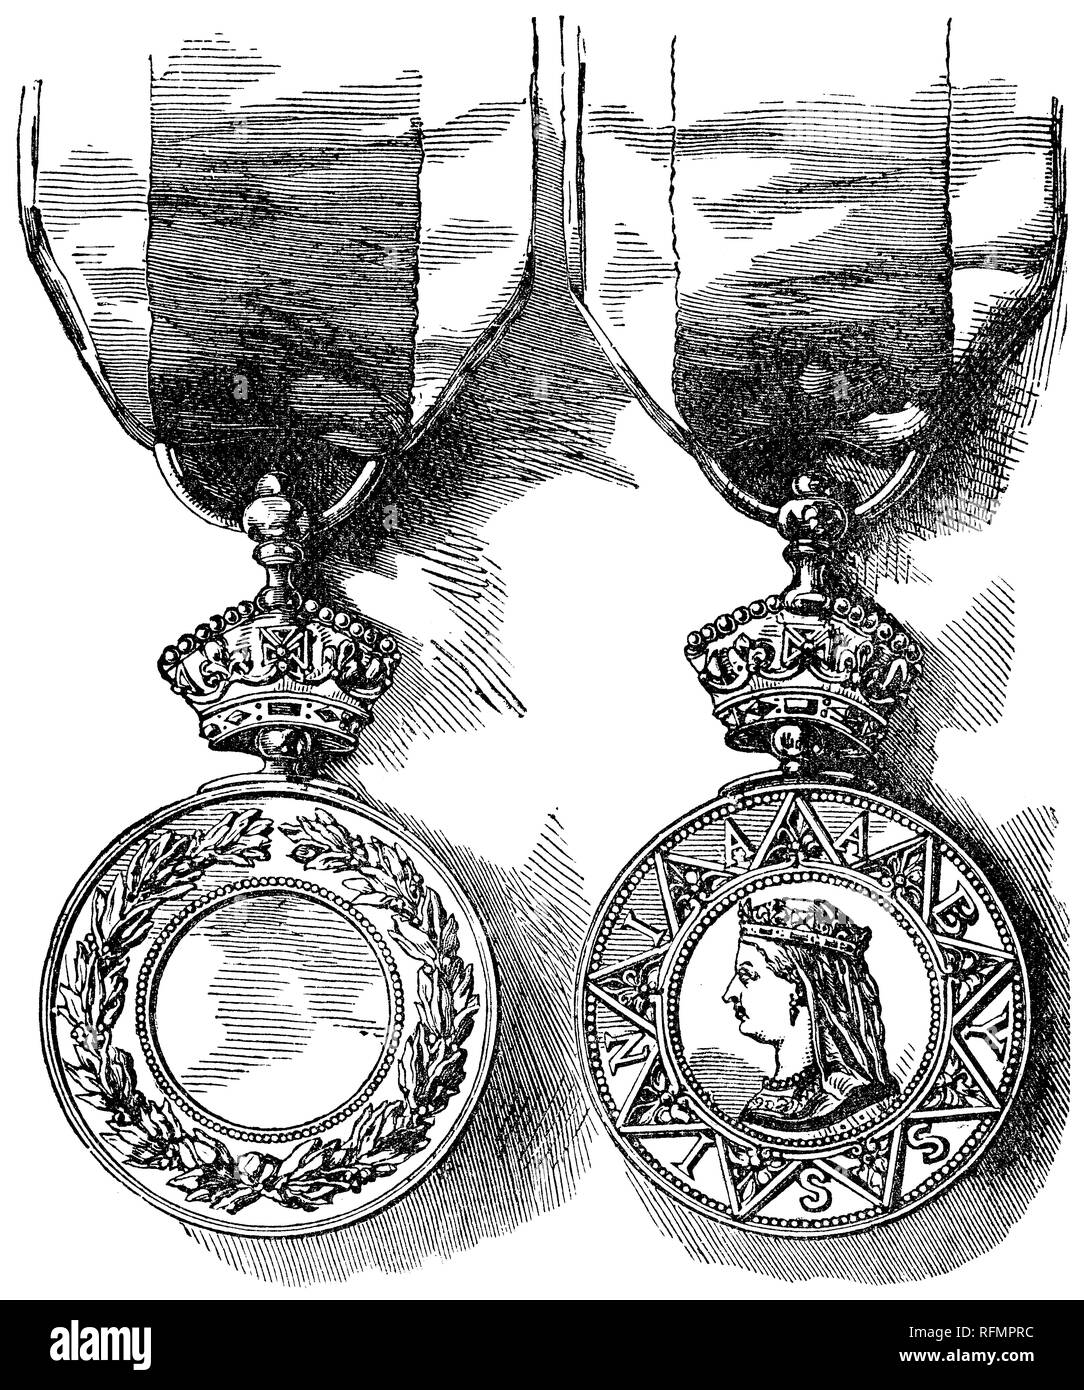 1888 Victorian grabado del anverso y el reverso de la Medalla de Guerra de Abisinia, adjudicado a fuerzas armadas indias y británicas en el 1868 expedición a Abisinia. Foto de stock